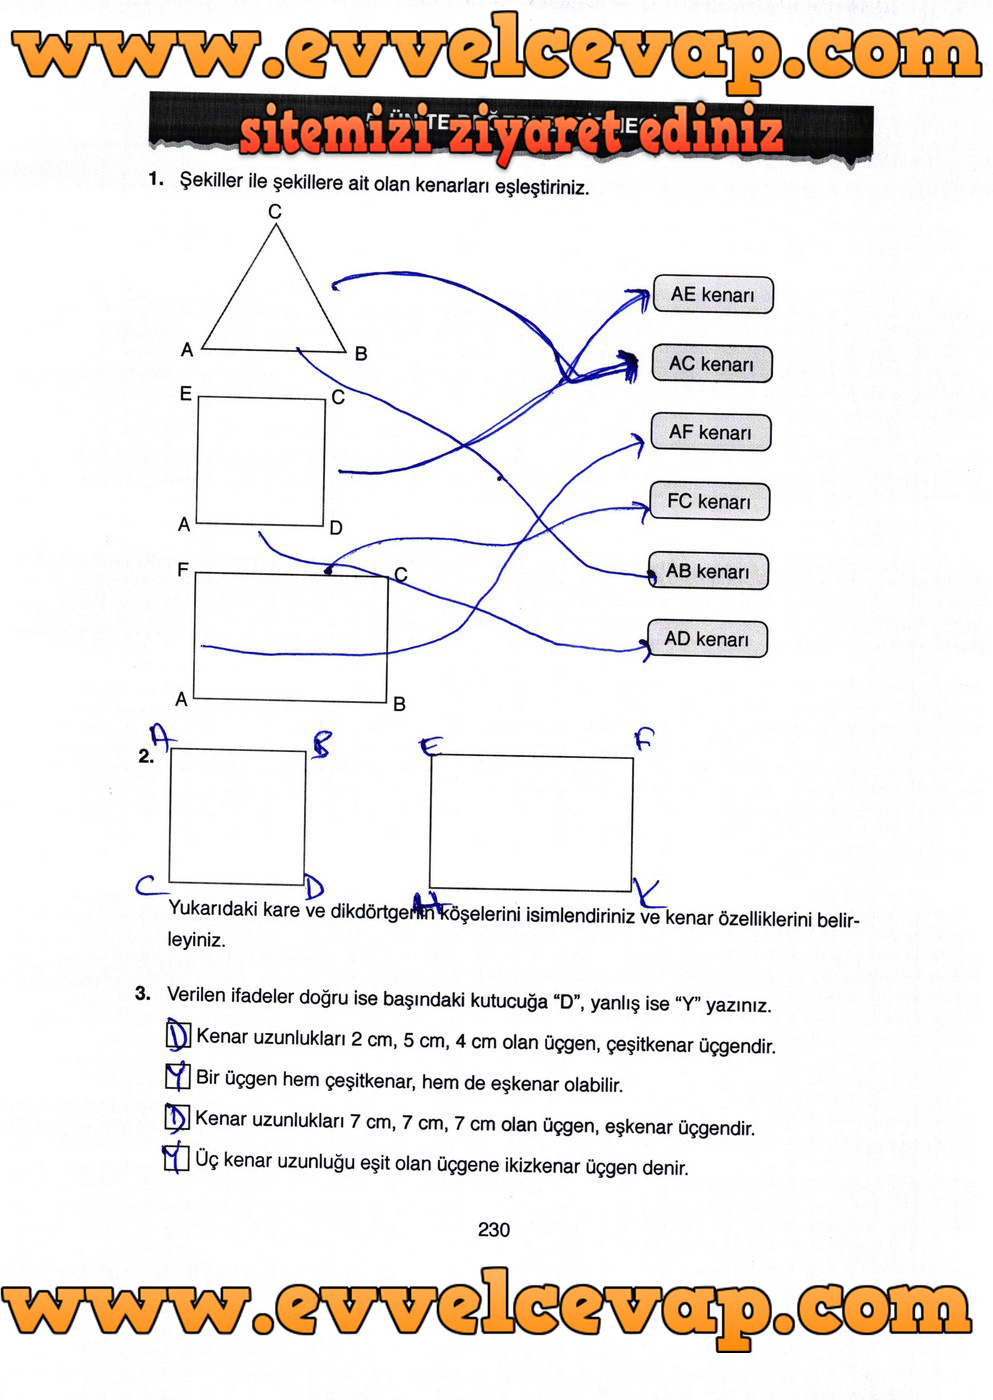 4. Sınıf Ata Yayıncılık Matematik Ders Kitabı Sayfa 230 Cevabı